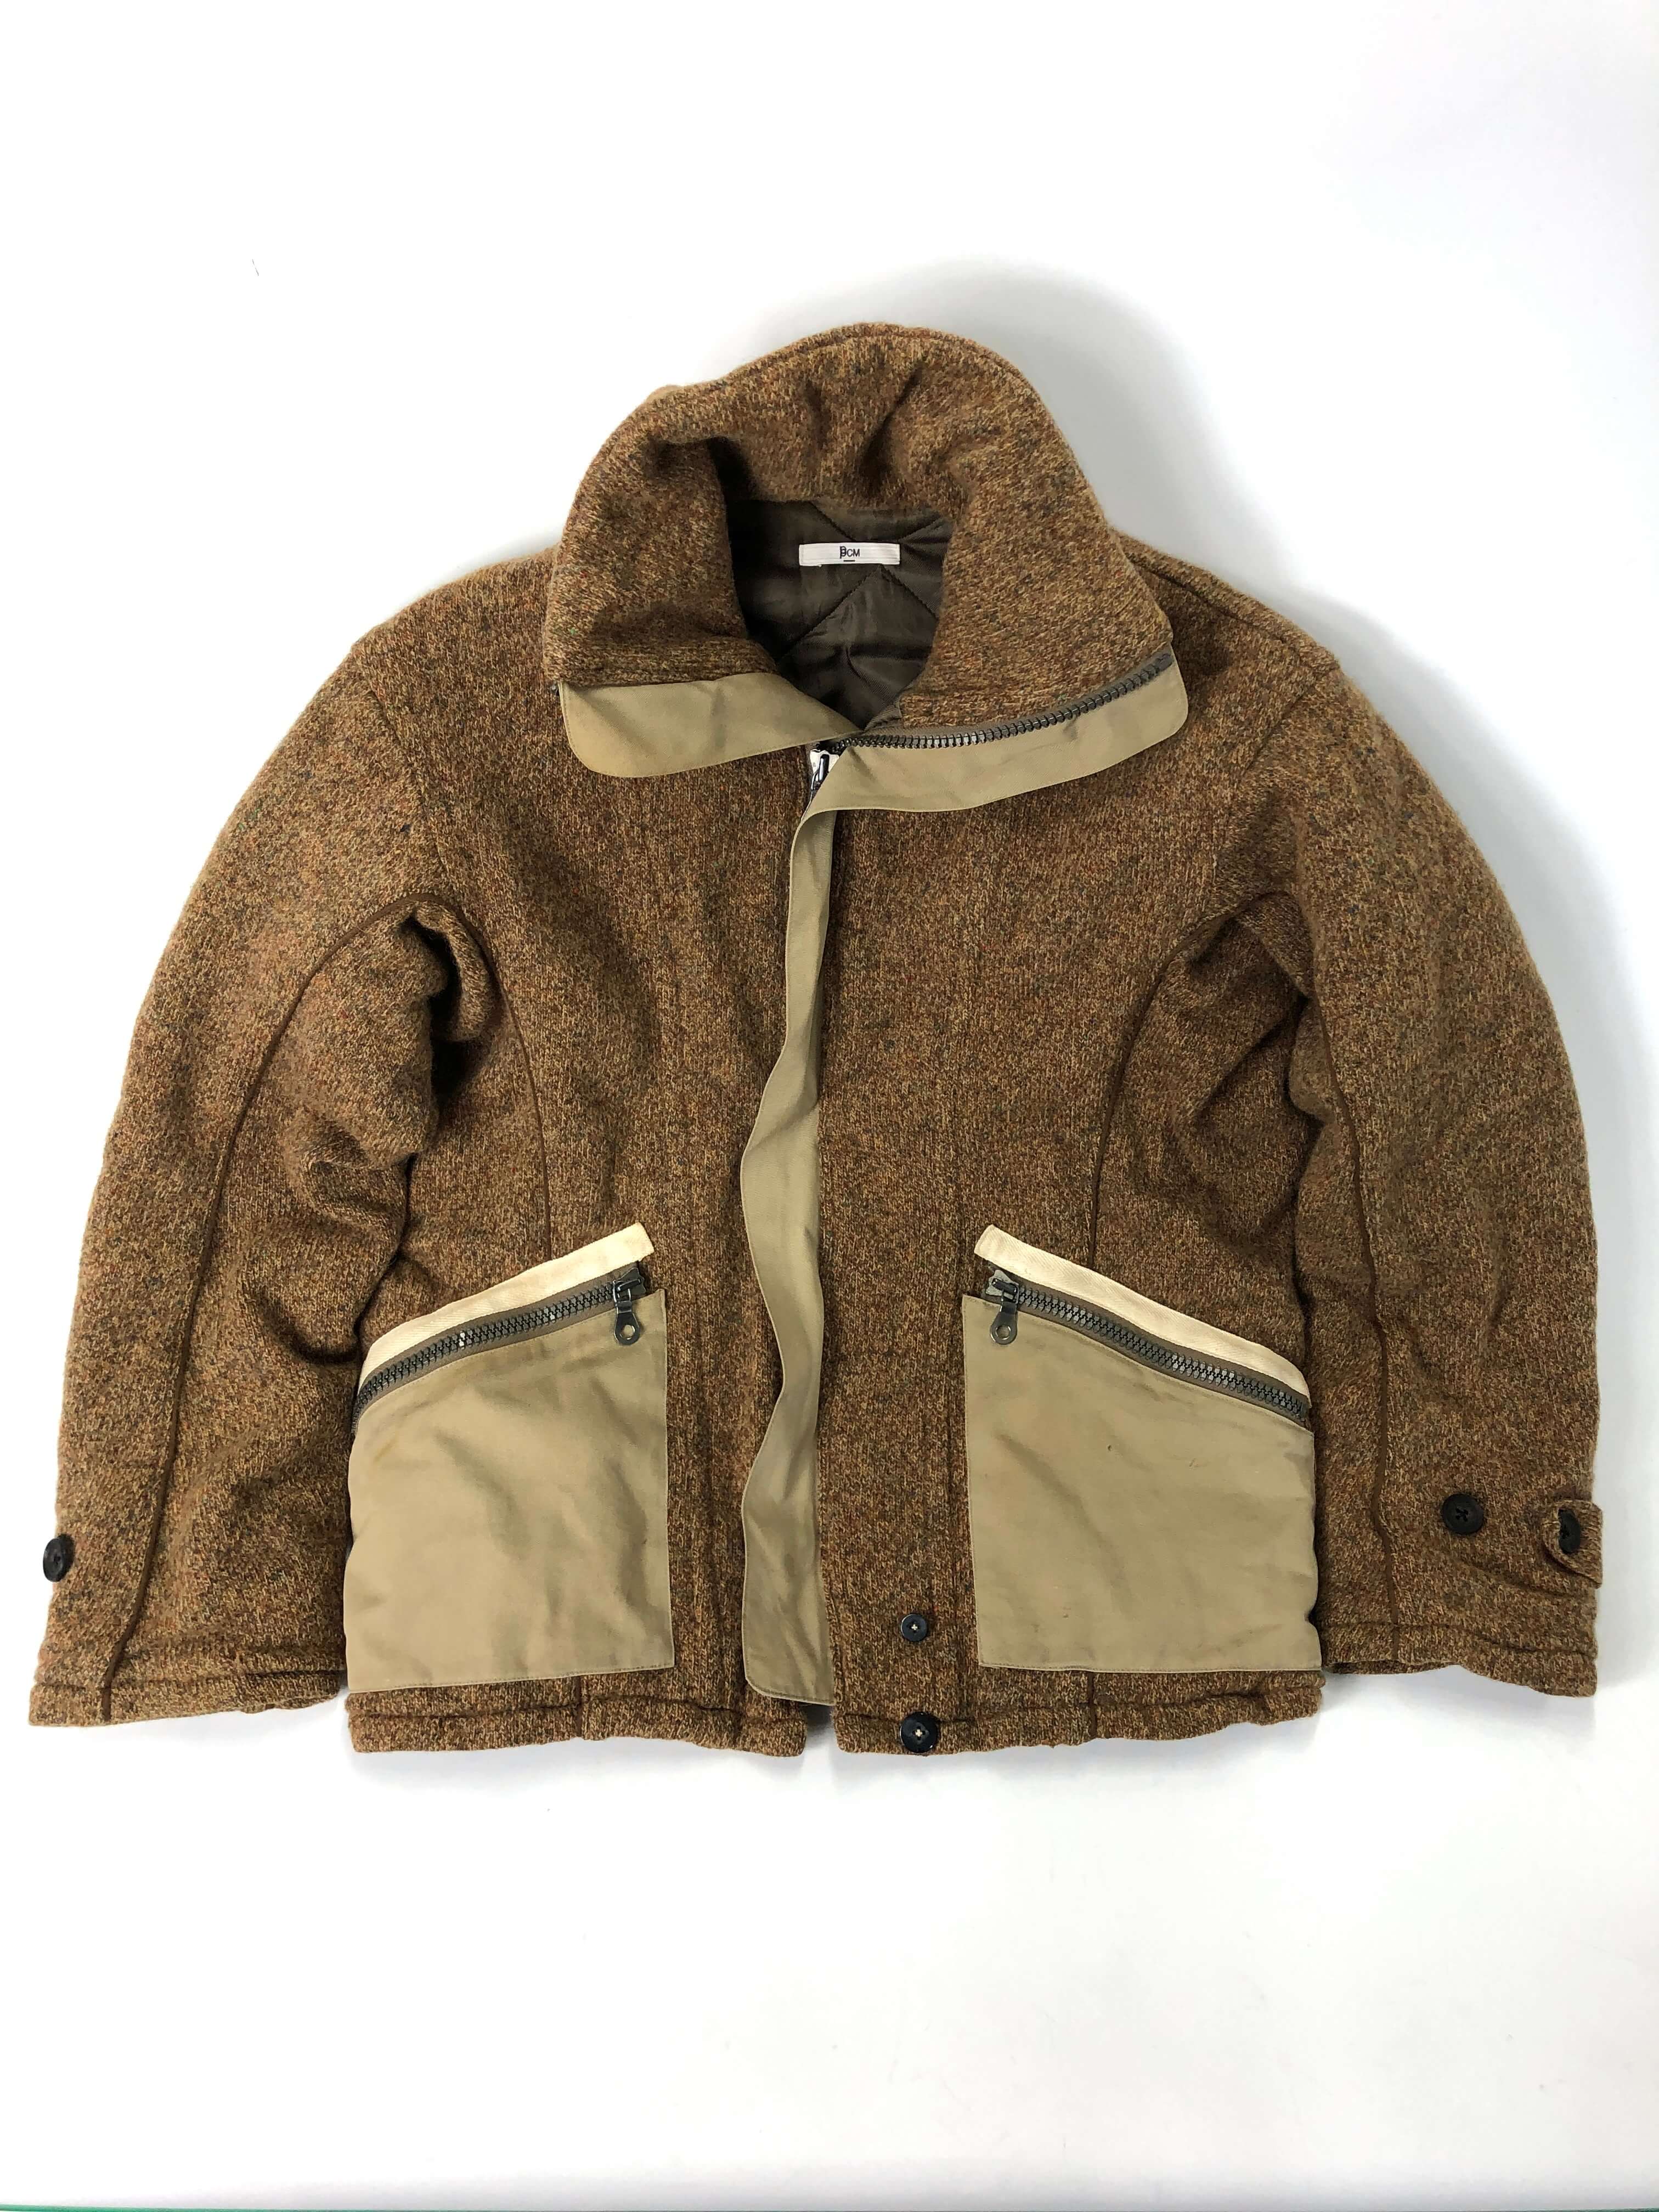 ppcm wool jacket